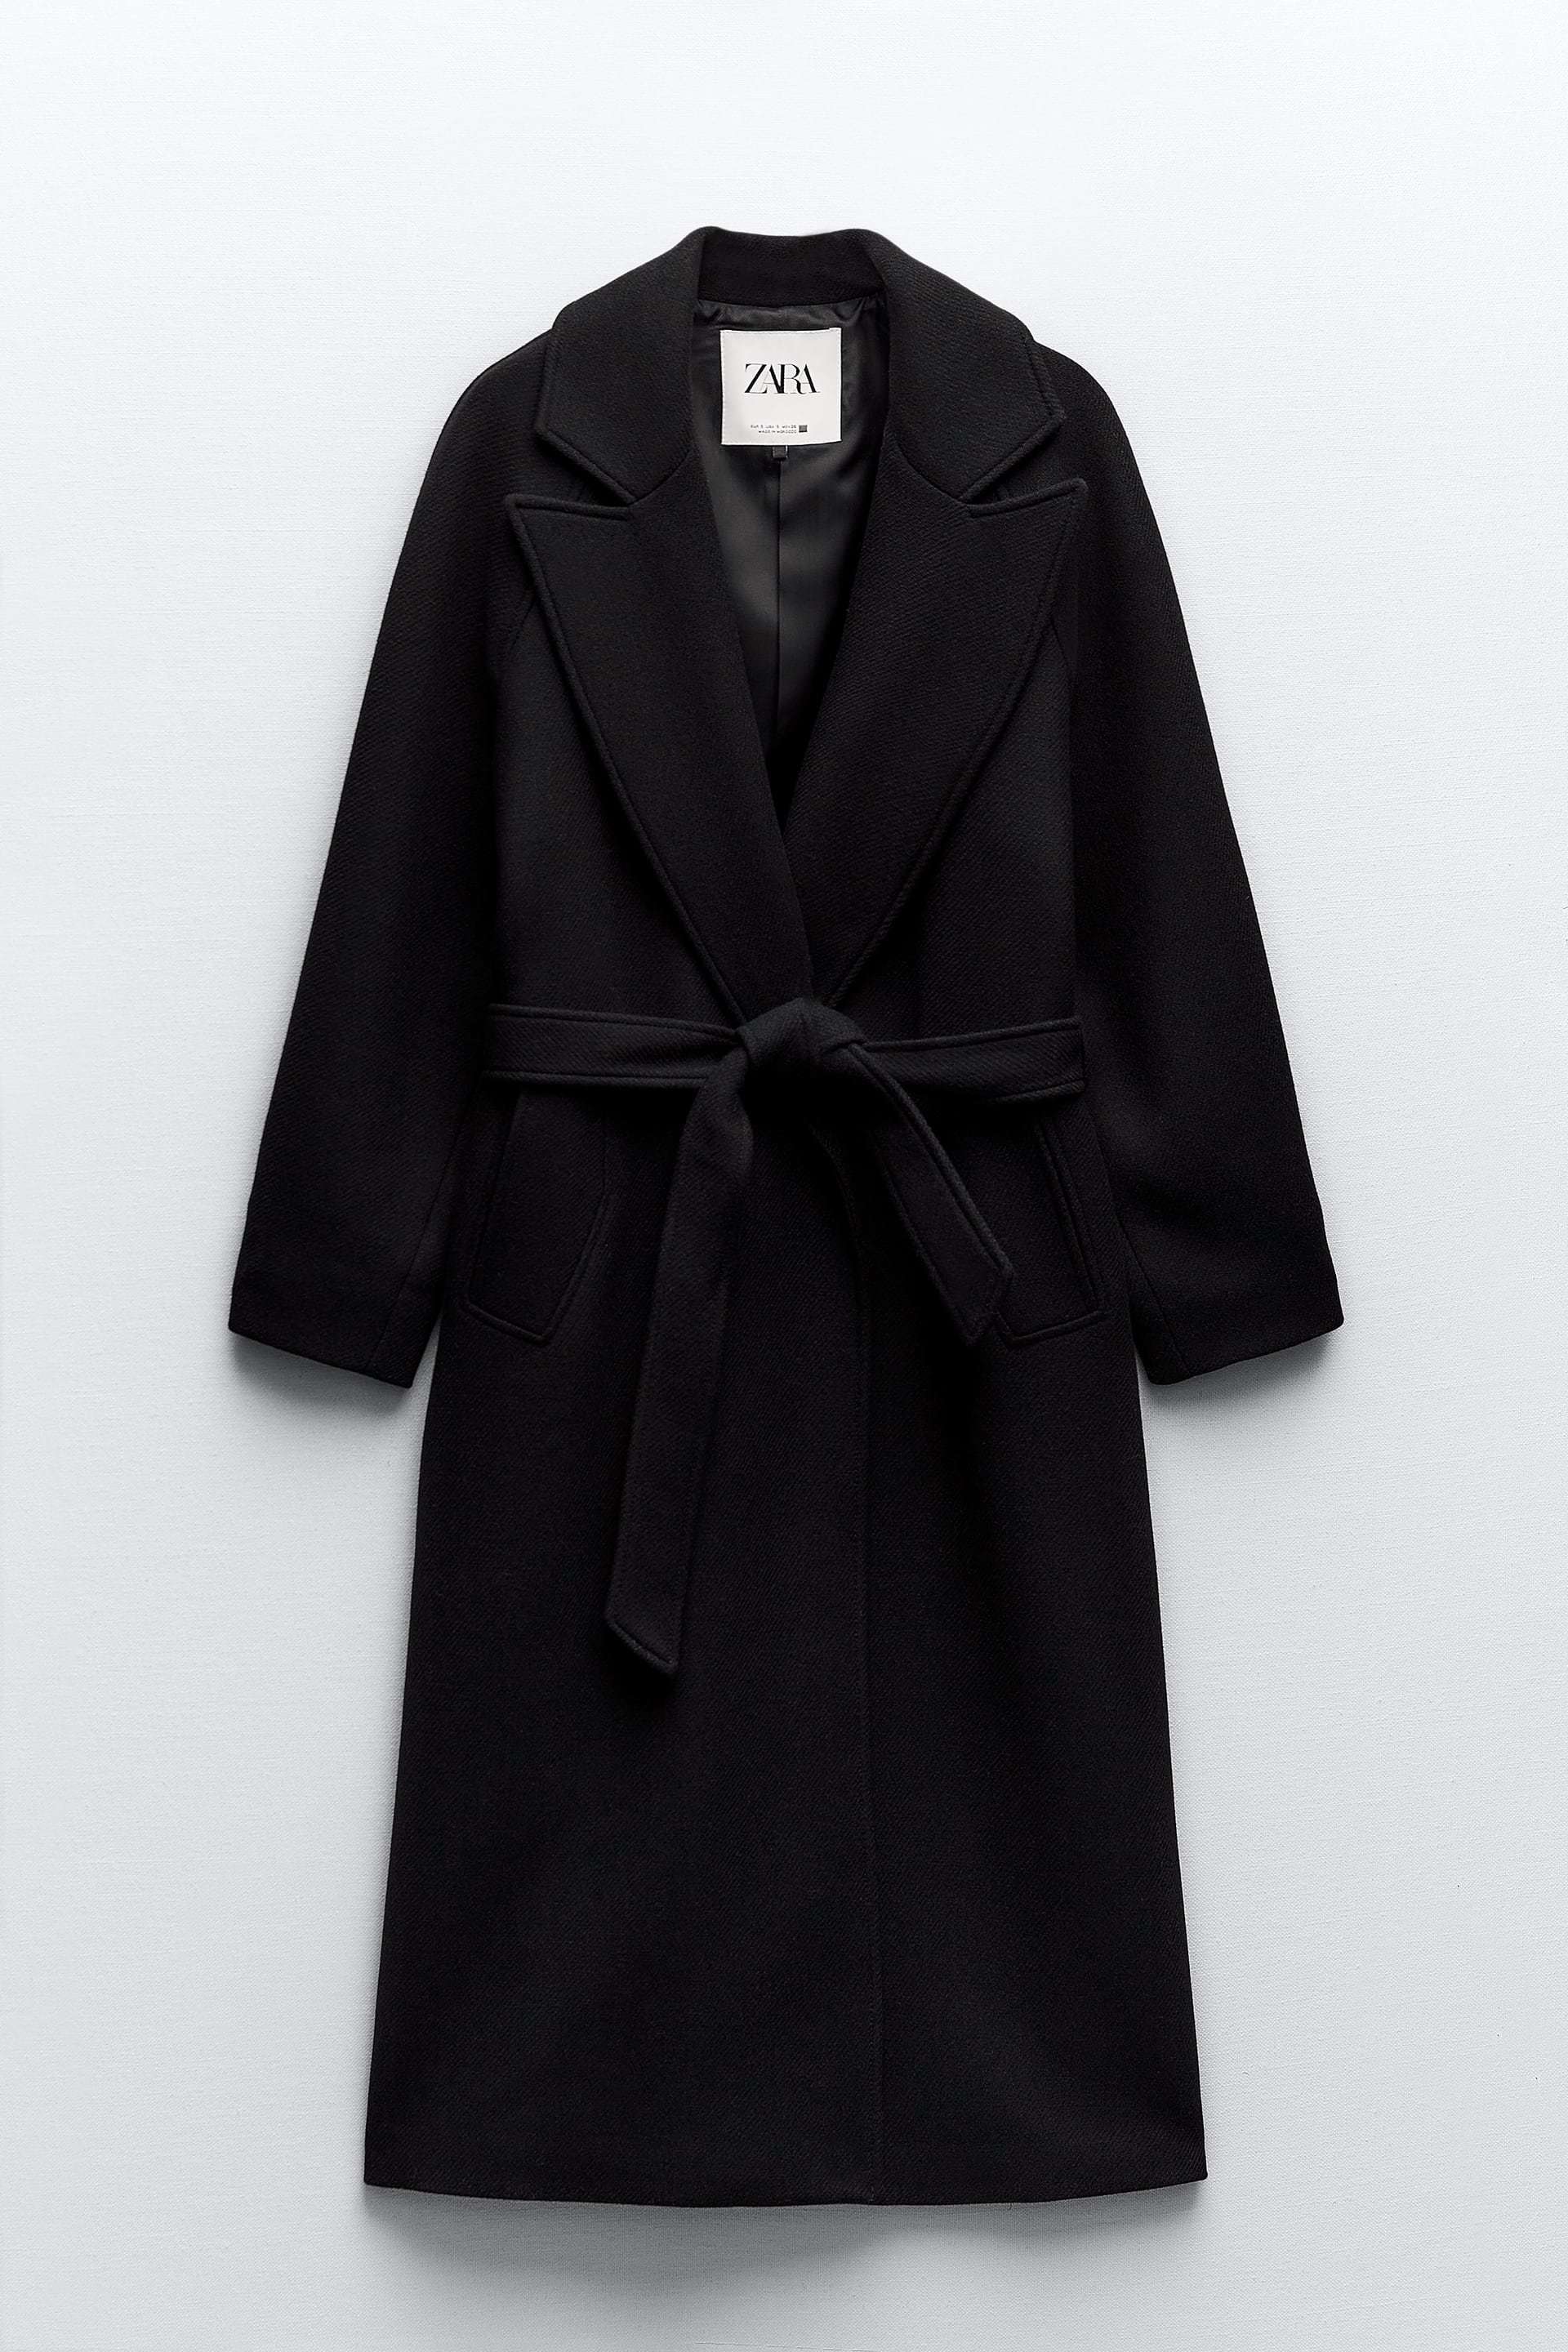 Abrigo largo con cinturón de Zara (99,95 euros).